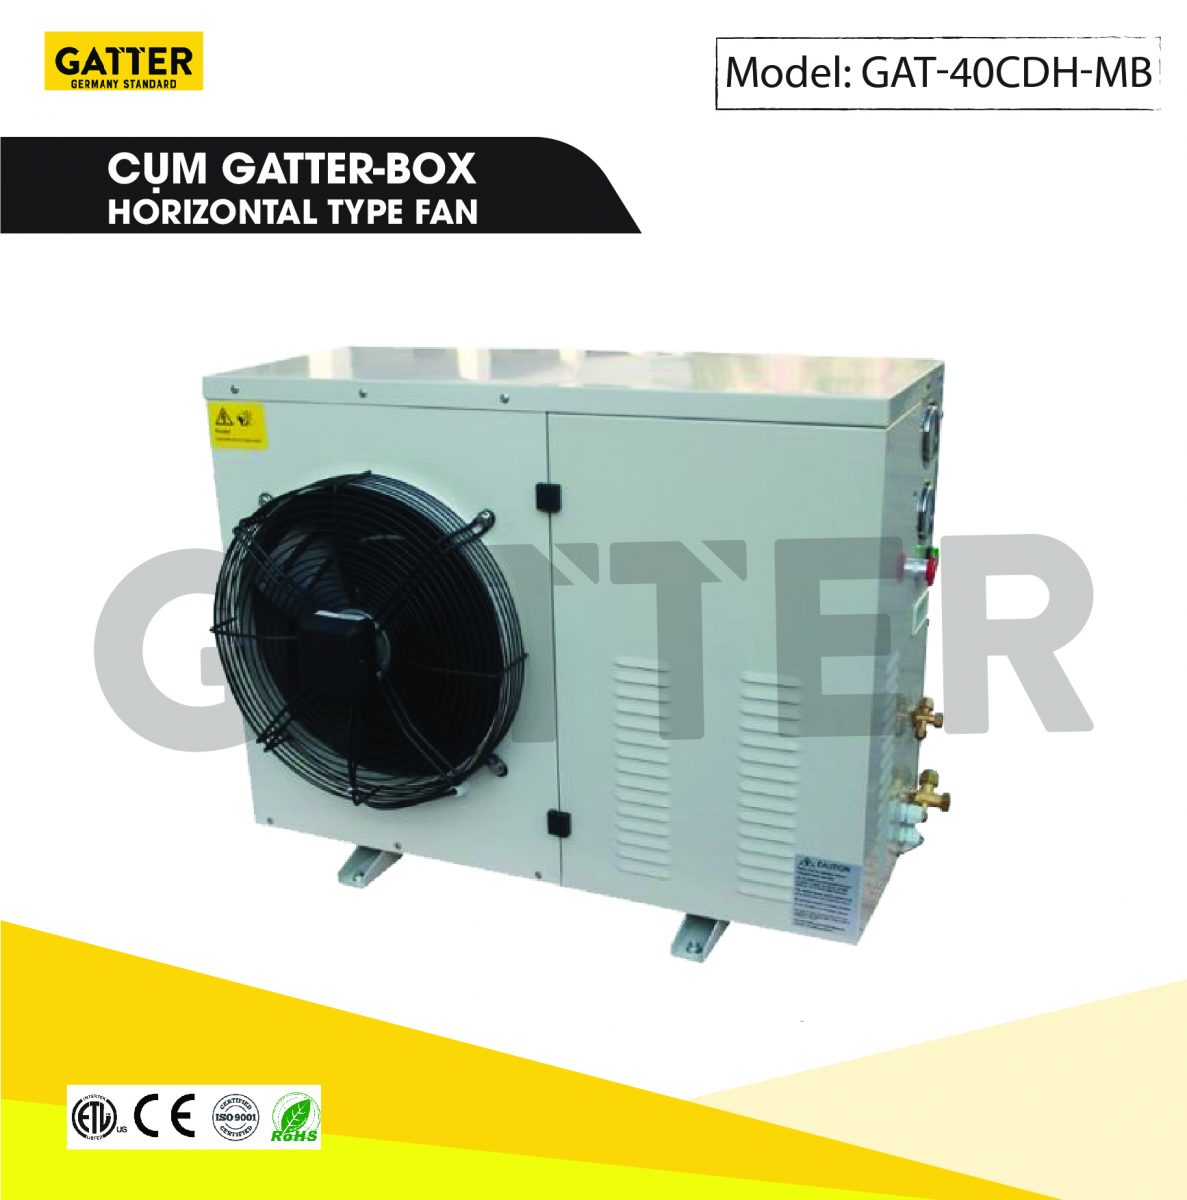 Cụm Gatter-box GAT-40CDH-MB 4 HP